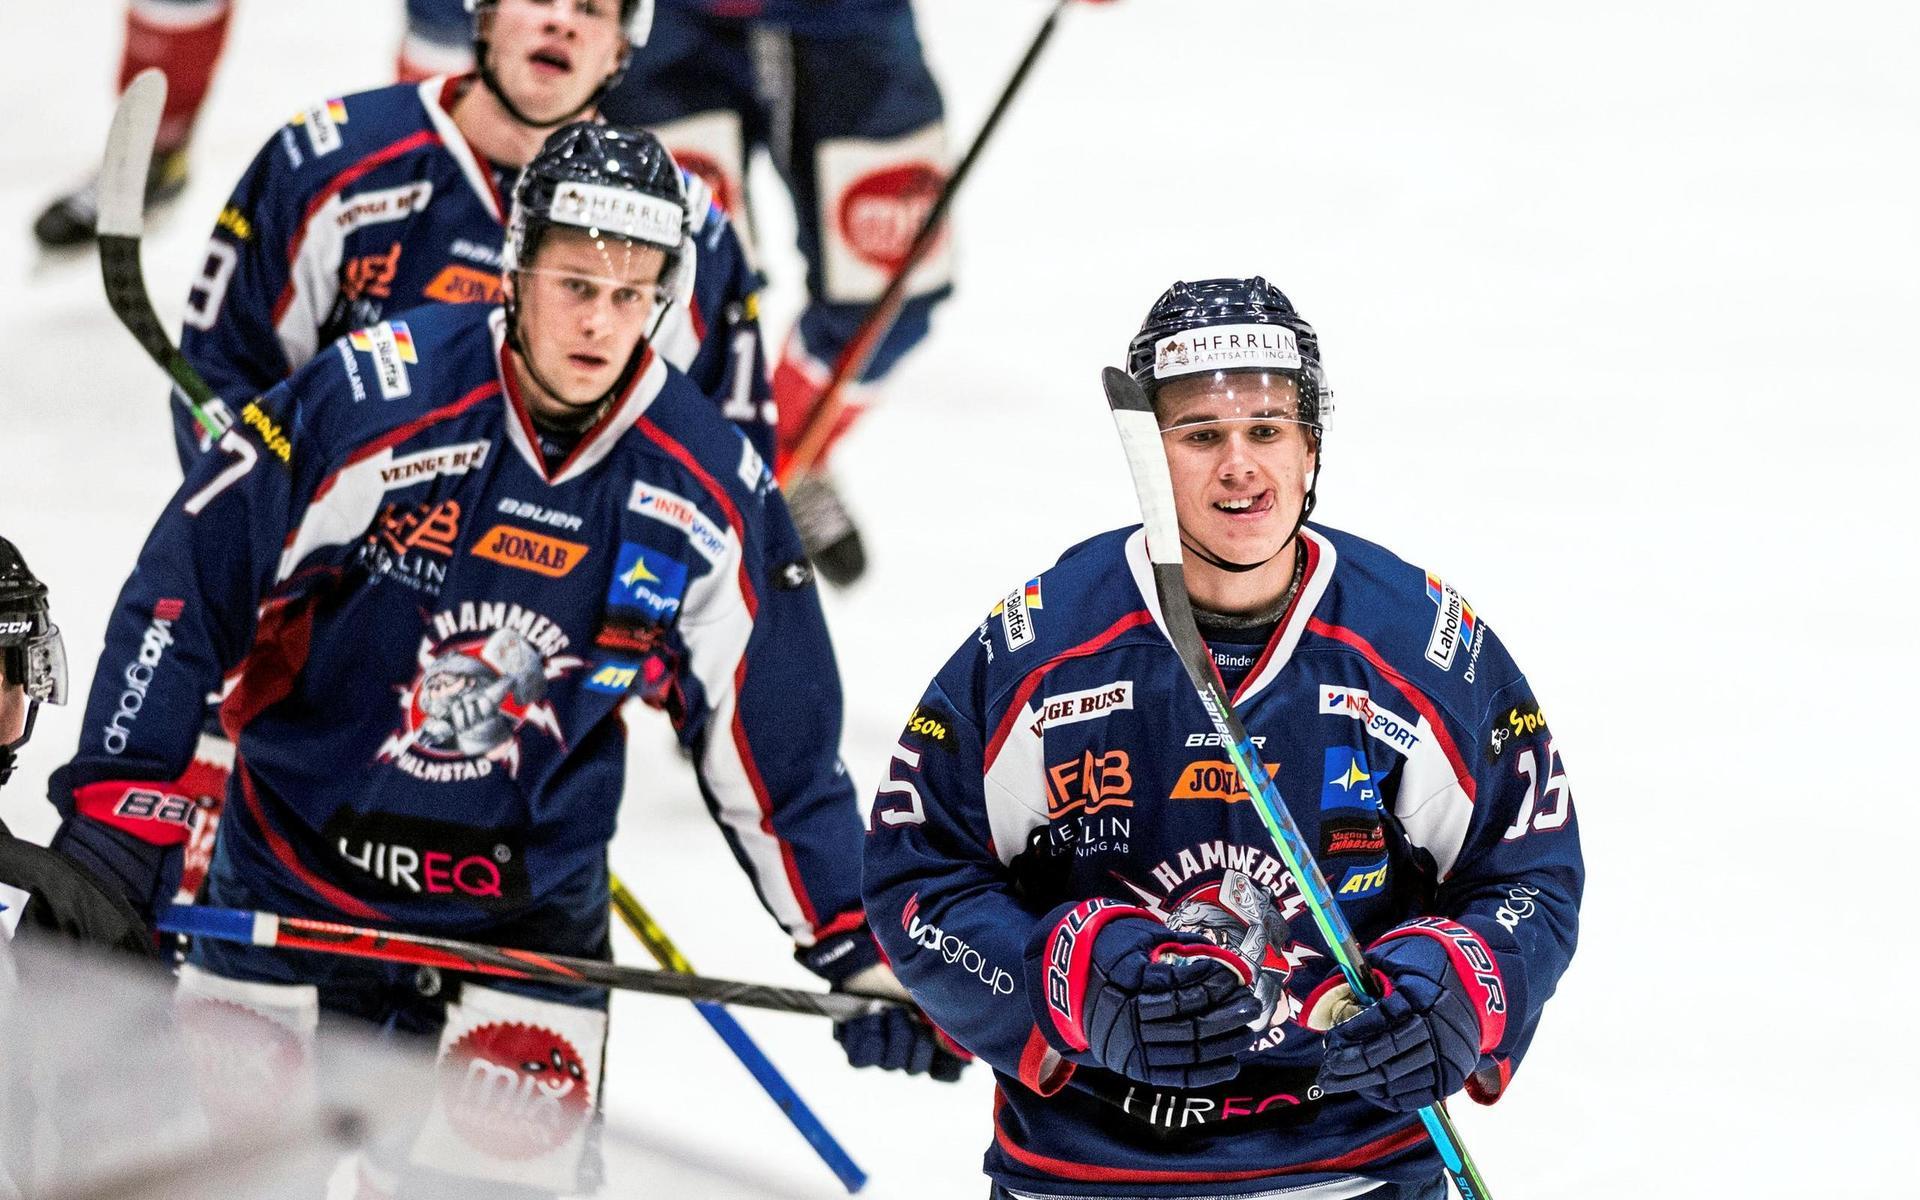 Halmstad Hammers spelar vidare i Hockeyettan efter beslut från Svenska ishockeyförbundet.